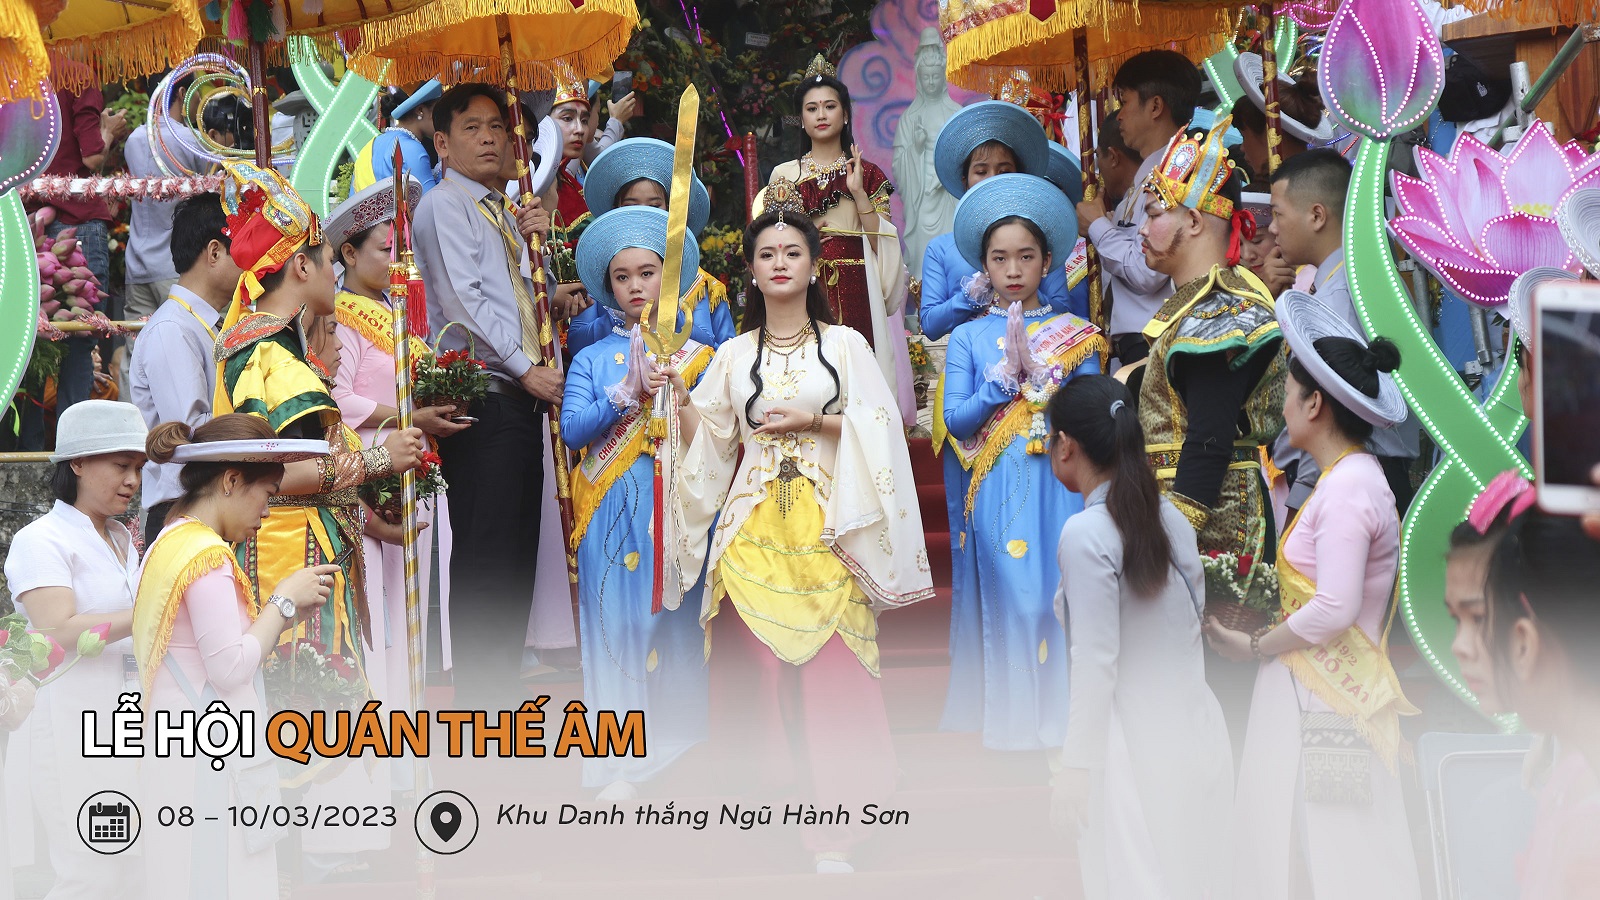 11 Le Hoi Quan The Am Ngu Hanh Son Danang 2023